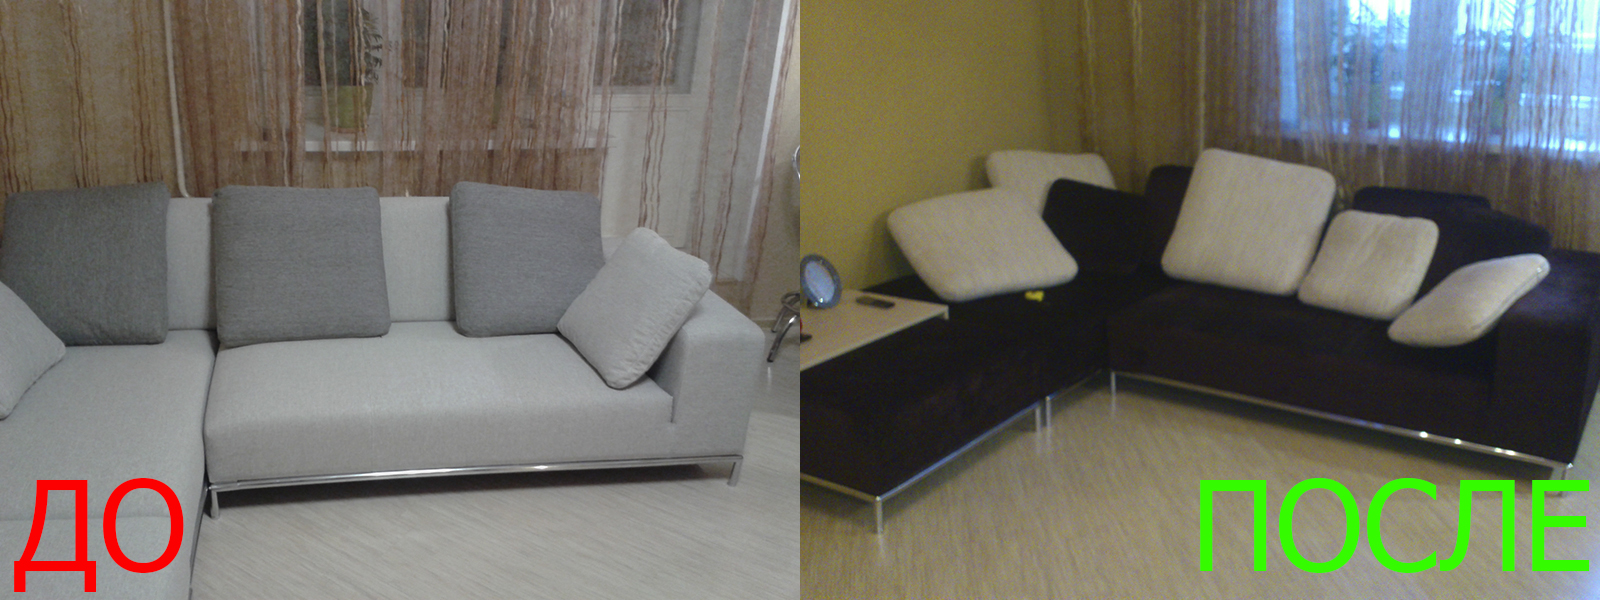 Обшивка углового дивана в Краснодаре разумные цены на услуги, опытные специалисты